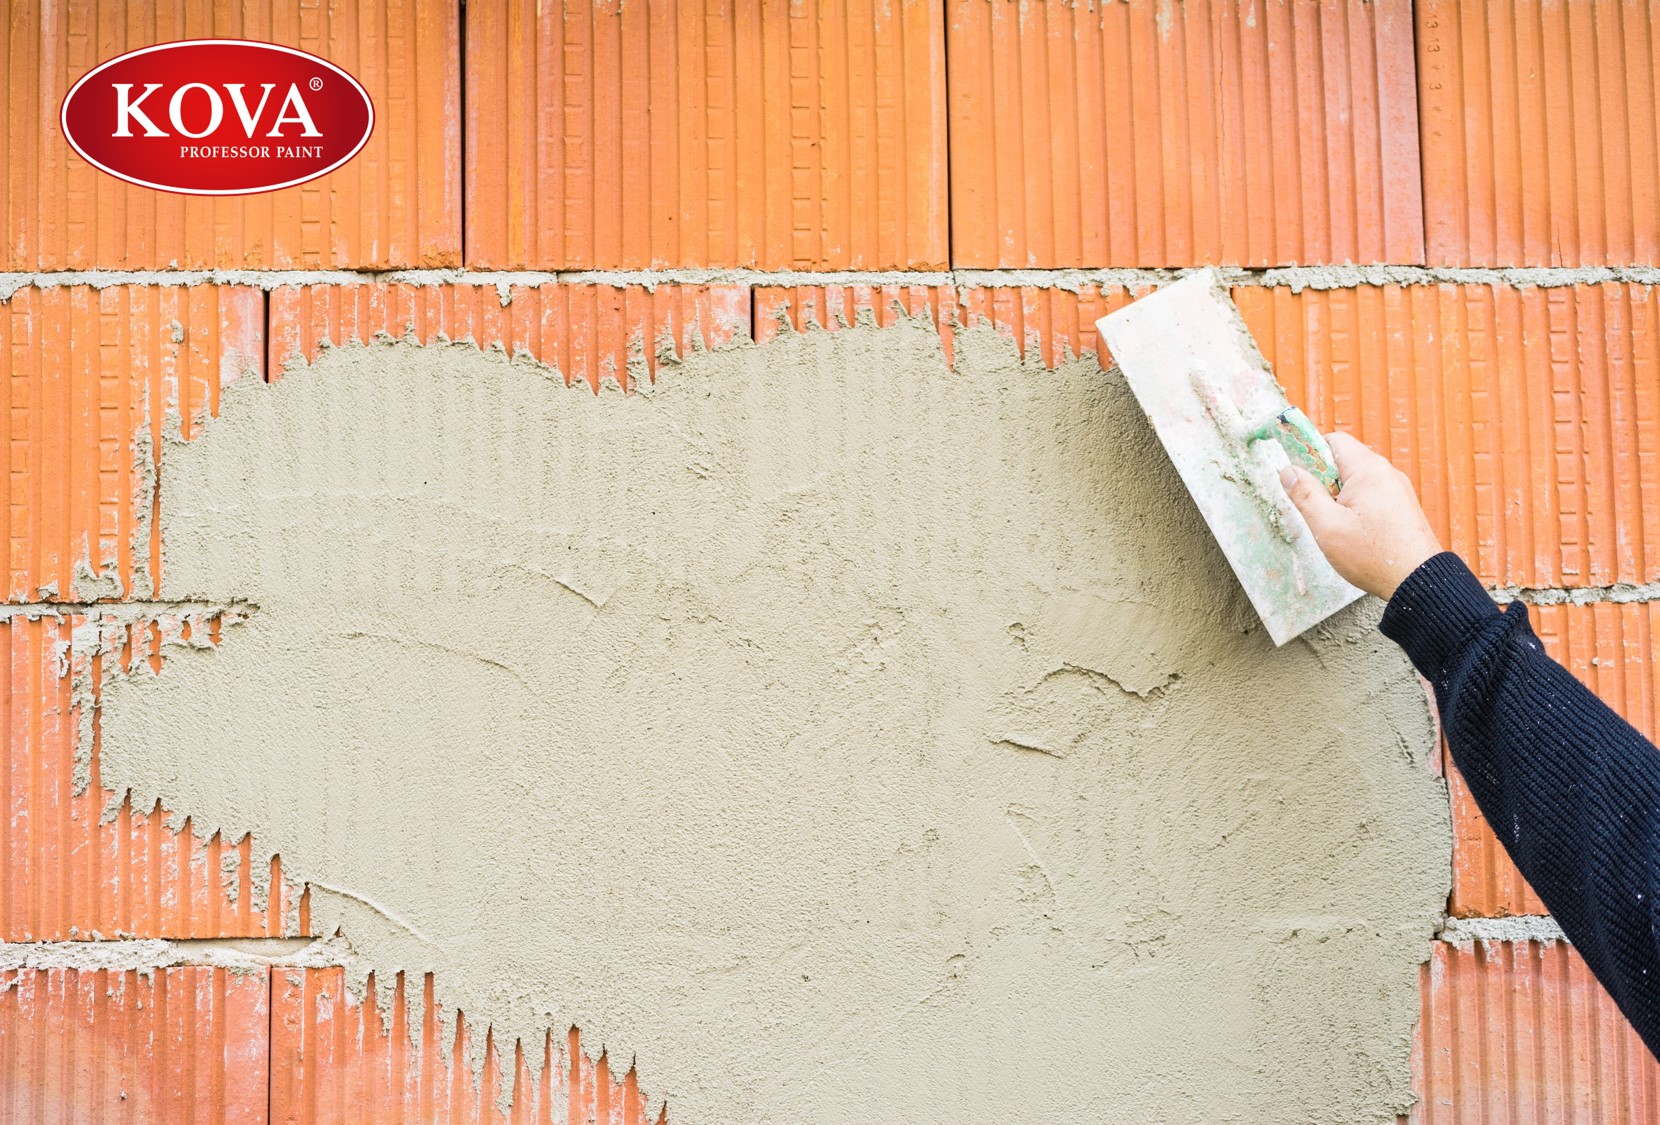 Chất chống thấm là yếu tố quan trọng để bảo vệ công trình của bạn khỏi các vấn đề về nước. Sơn chống thấm với chất lượng cao sẽ giúp giải quyết vấn đề này. Hãy xem hình ảnh liên quan để thấy rõ được sự khác biệt của chất chống thấm trong sơn nhé!